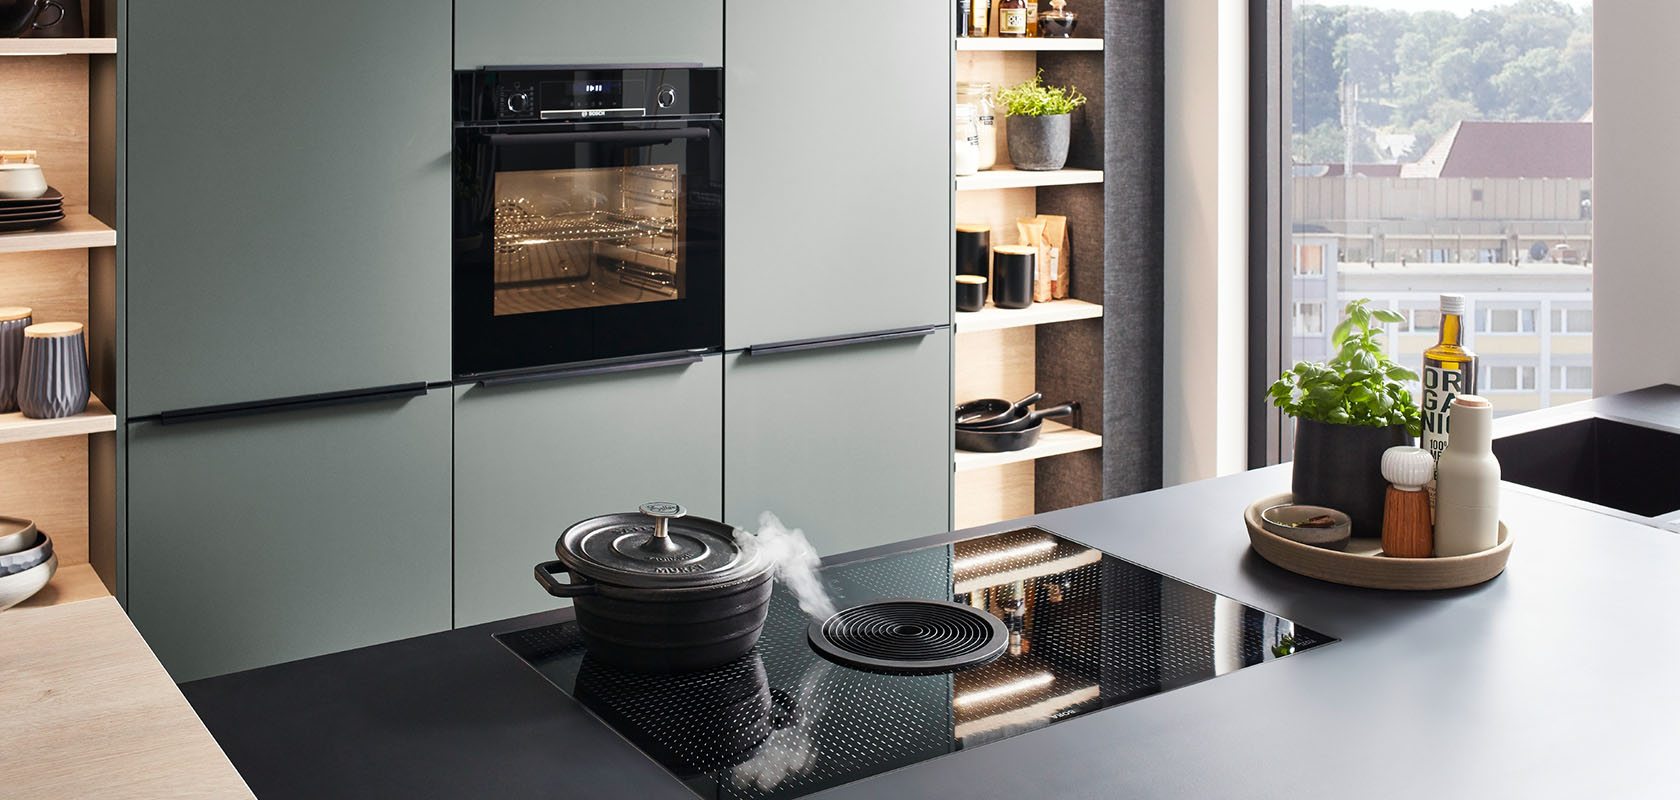 Moderne keukeninterieur met strakke groene kasten, geïntegreerde apparaten en een inductiekookplaat op een donker werkblad, uitstralend eigentijdse stijl en functionaliteit.